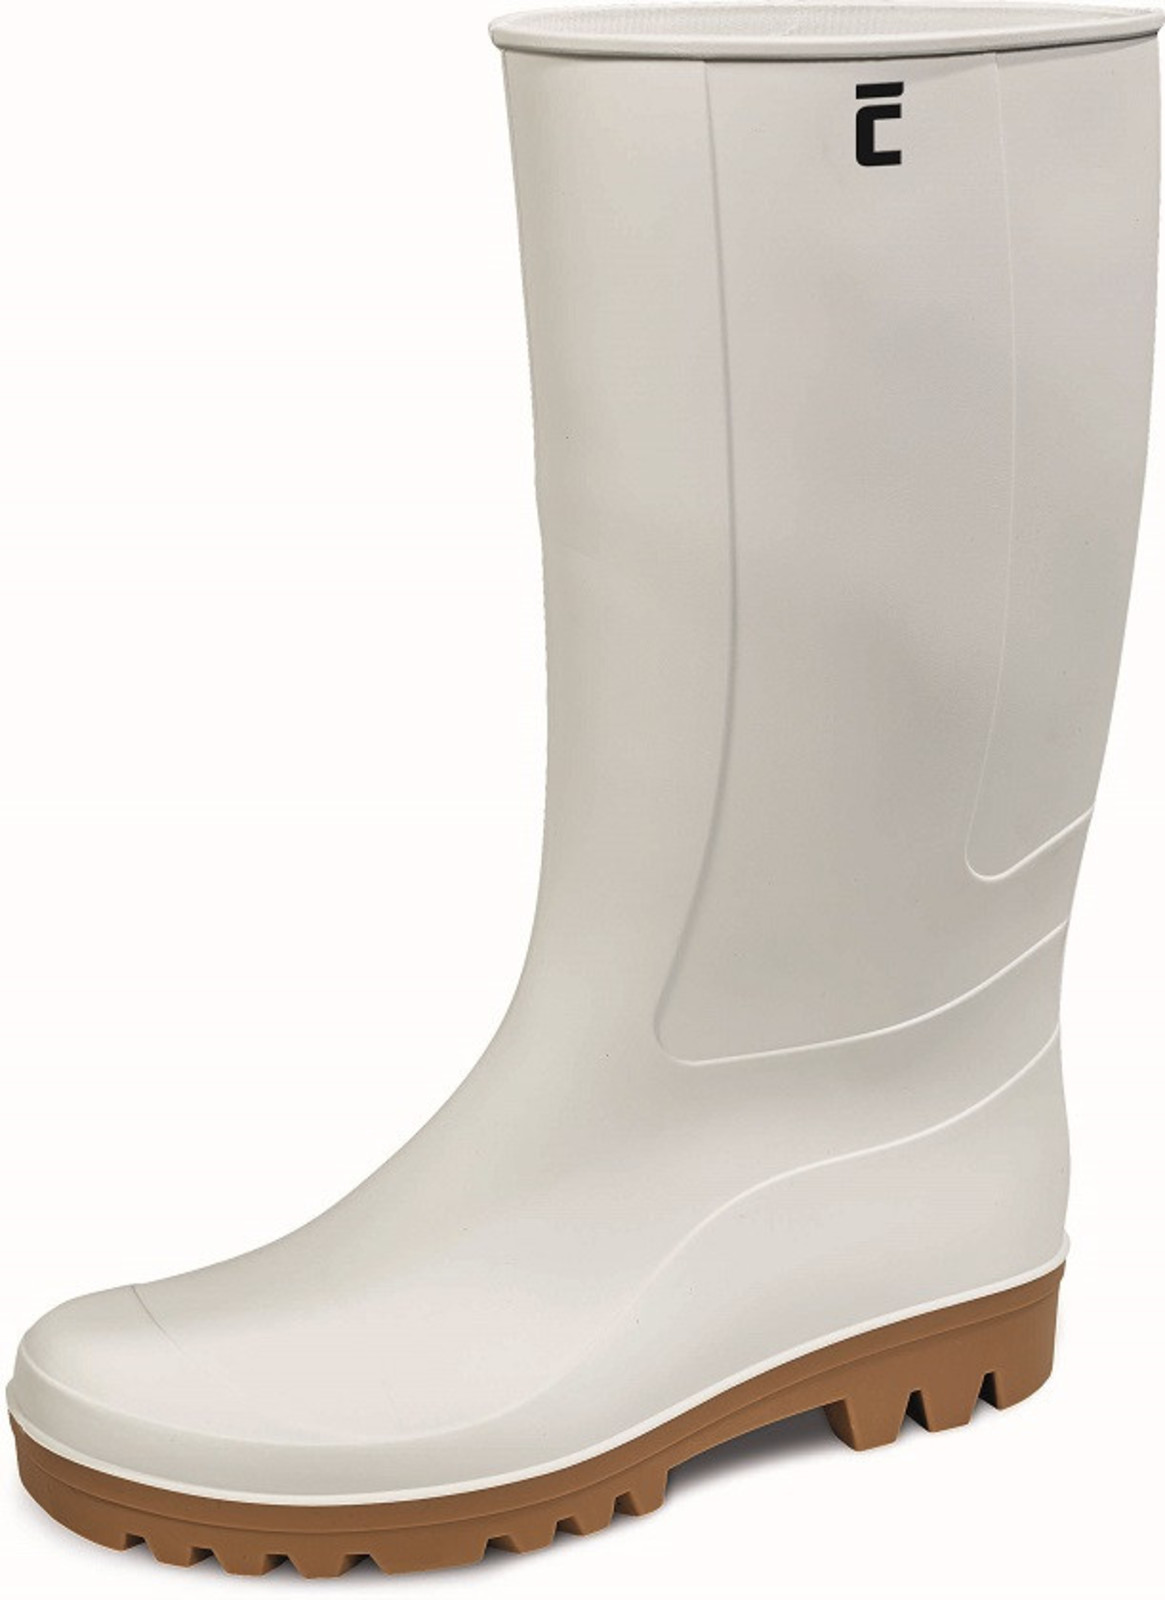 Gumáky Boots BC Food O4  - veľkosť: 41, farba: biela